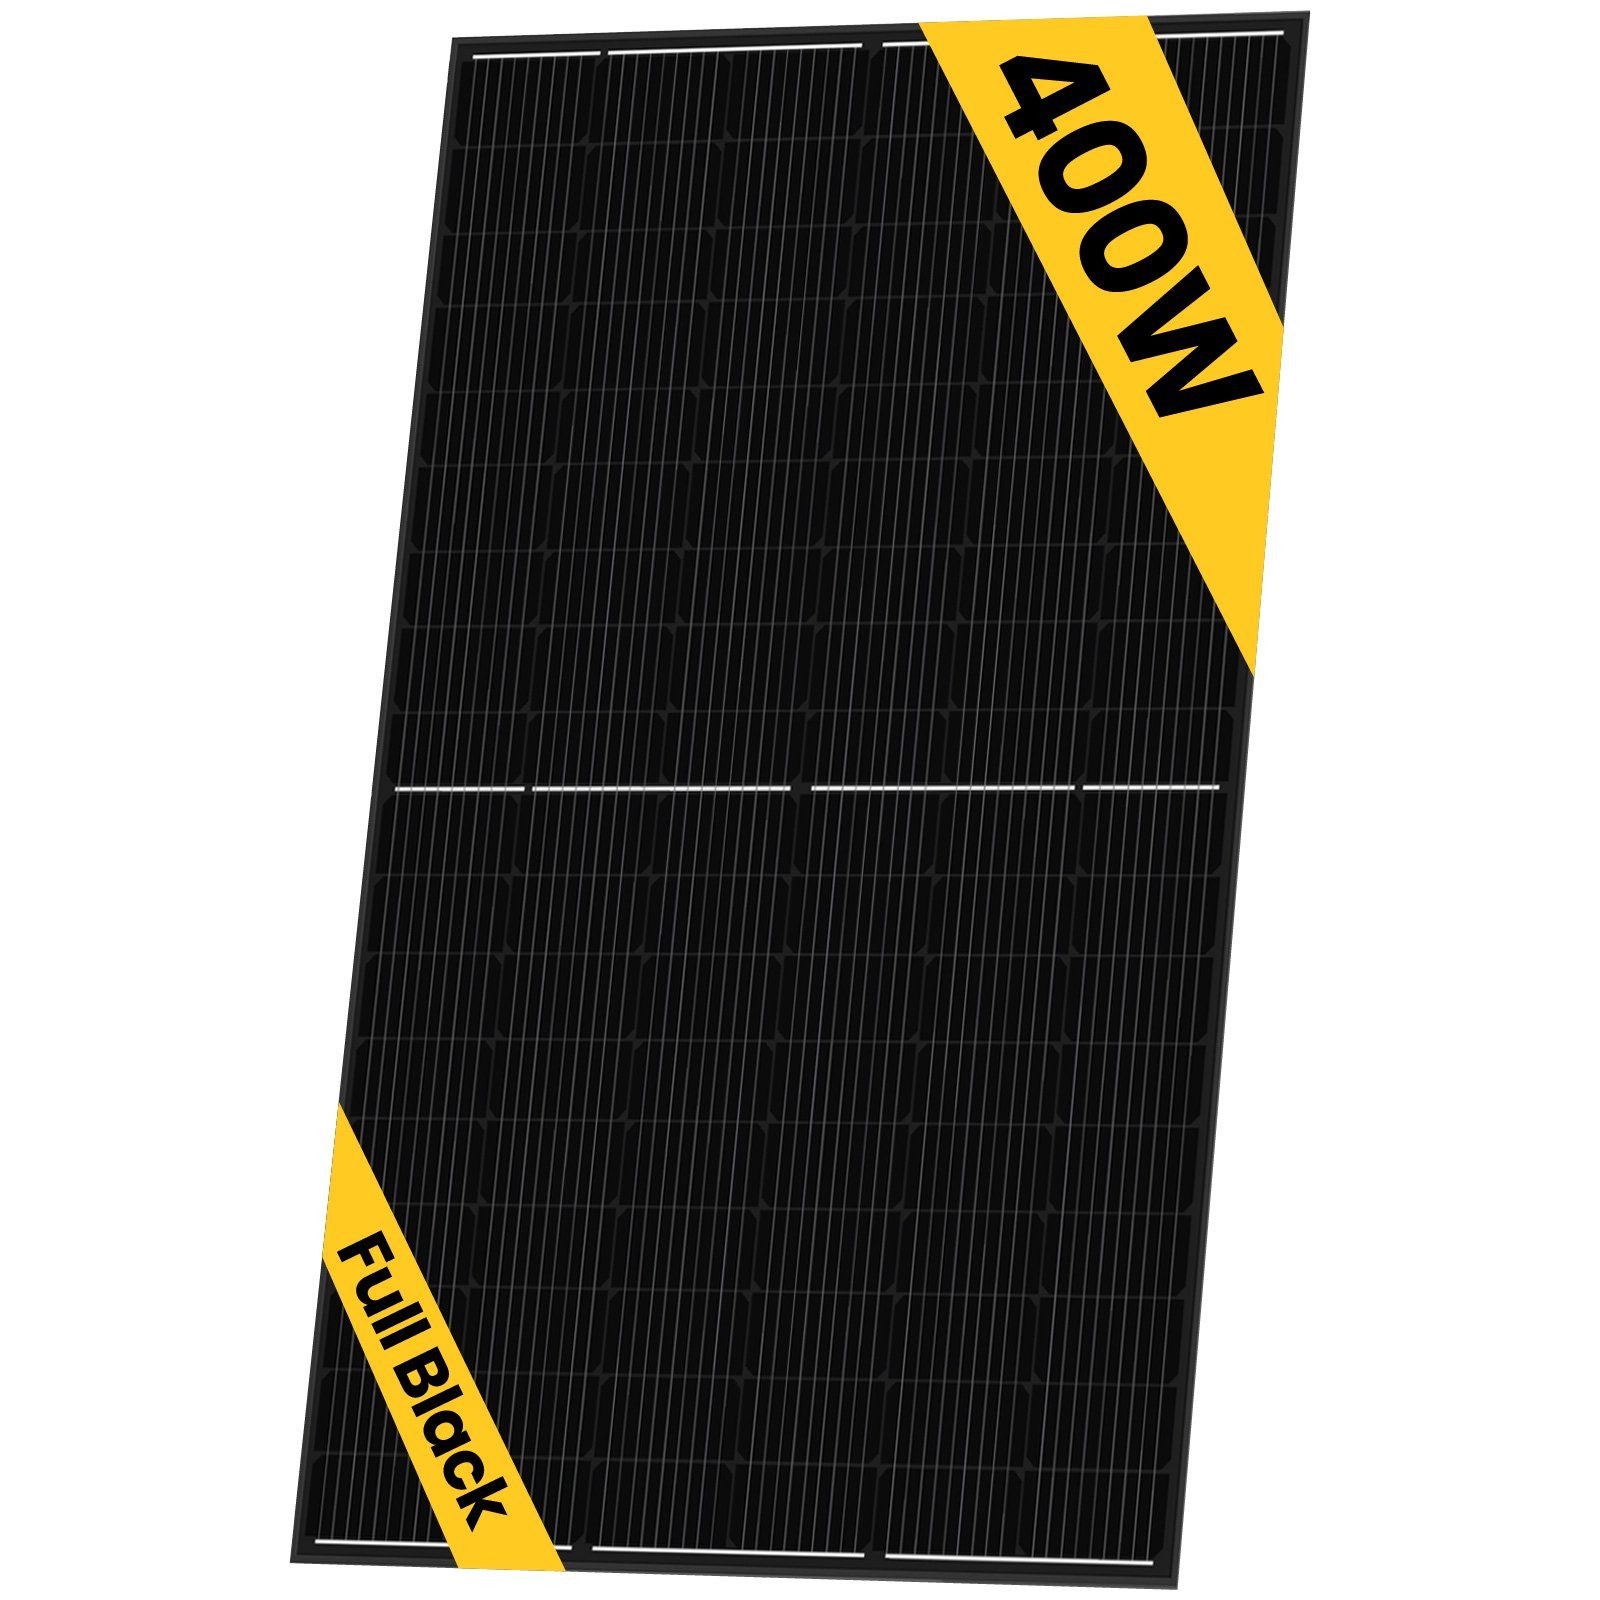 Stegpearl Solaranlage 10x 400W Sunpro Photovoltaik Hieff monokristalline Schwarz Solarmodul, Schwarz (Solarpanel), Wasserdichtigkeitsklasse IP68